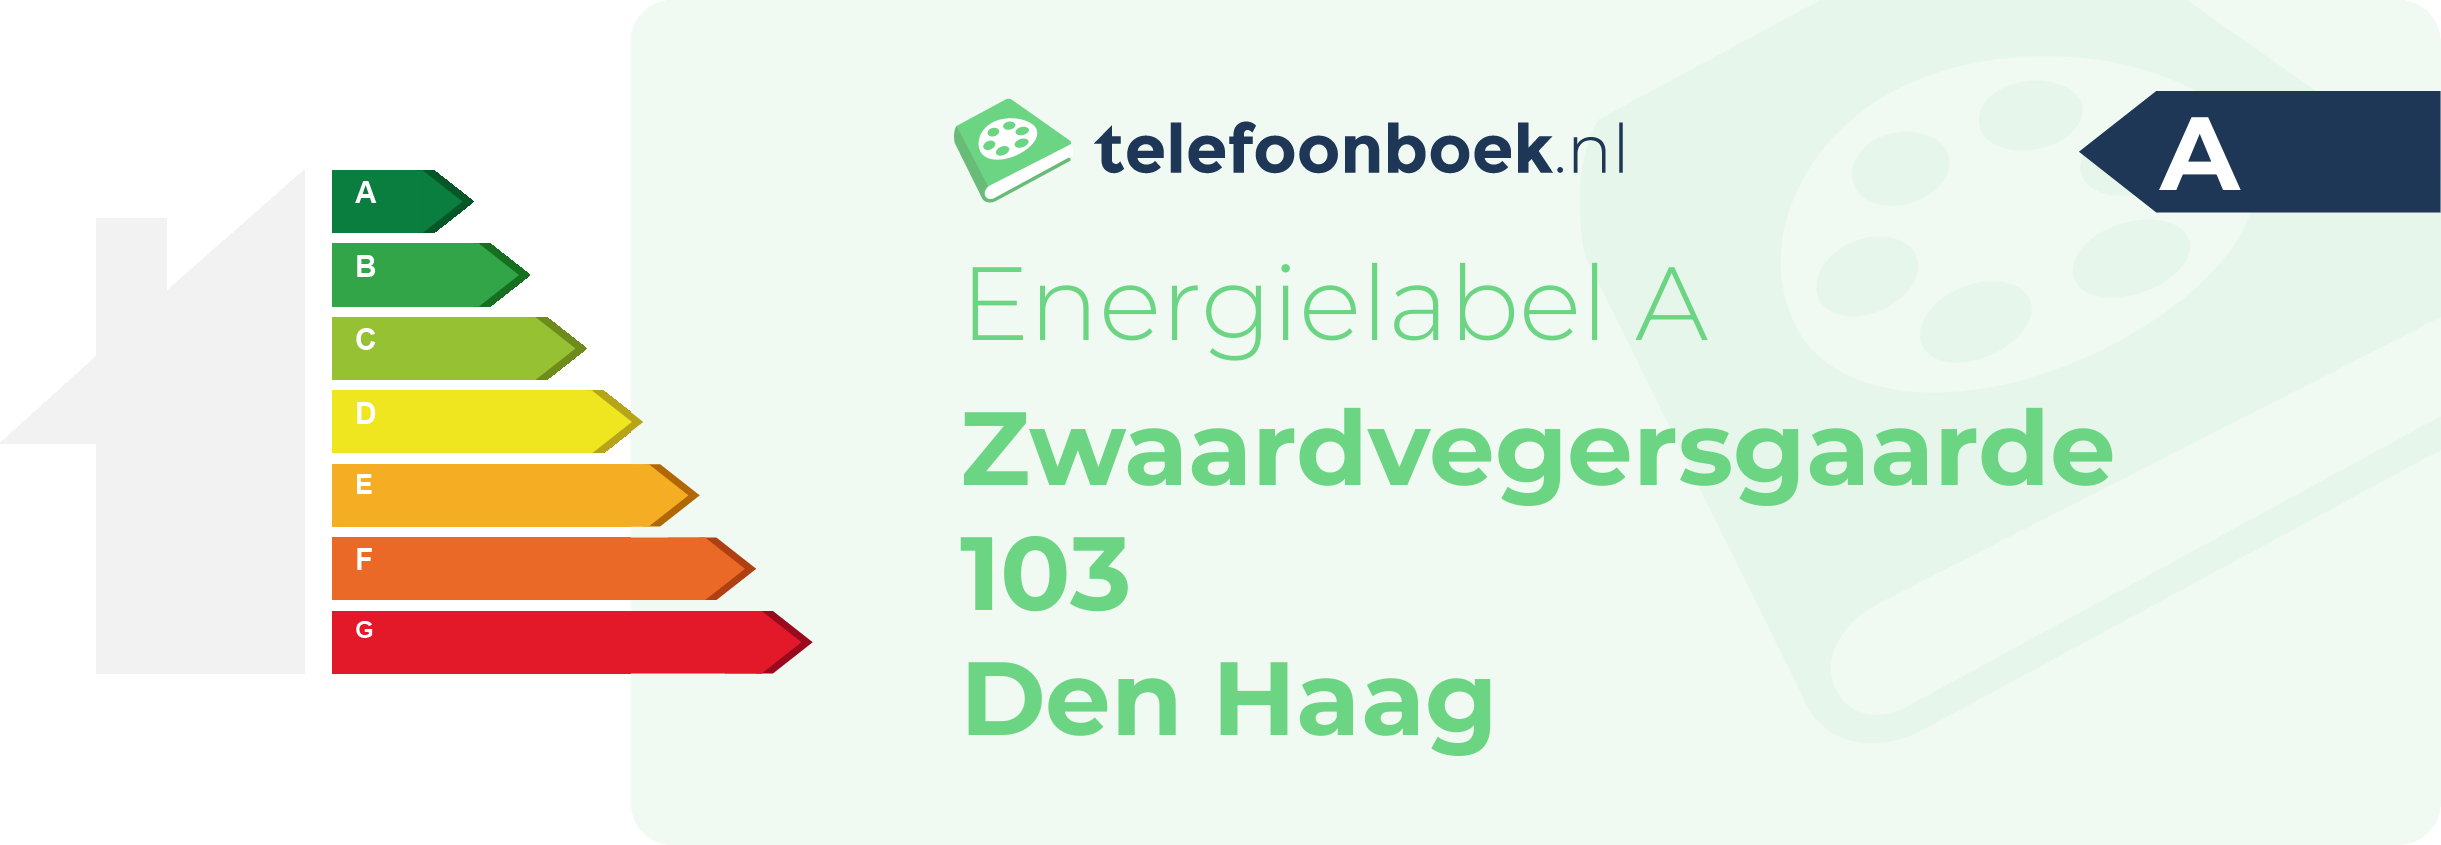 Energielabel Zwaardvegersgaarde 103 Den Haag